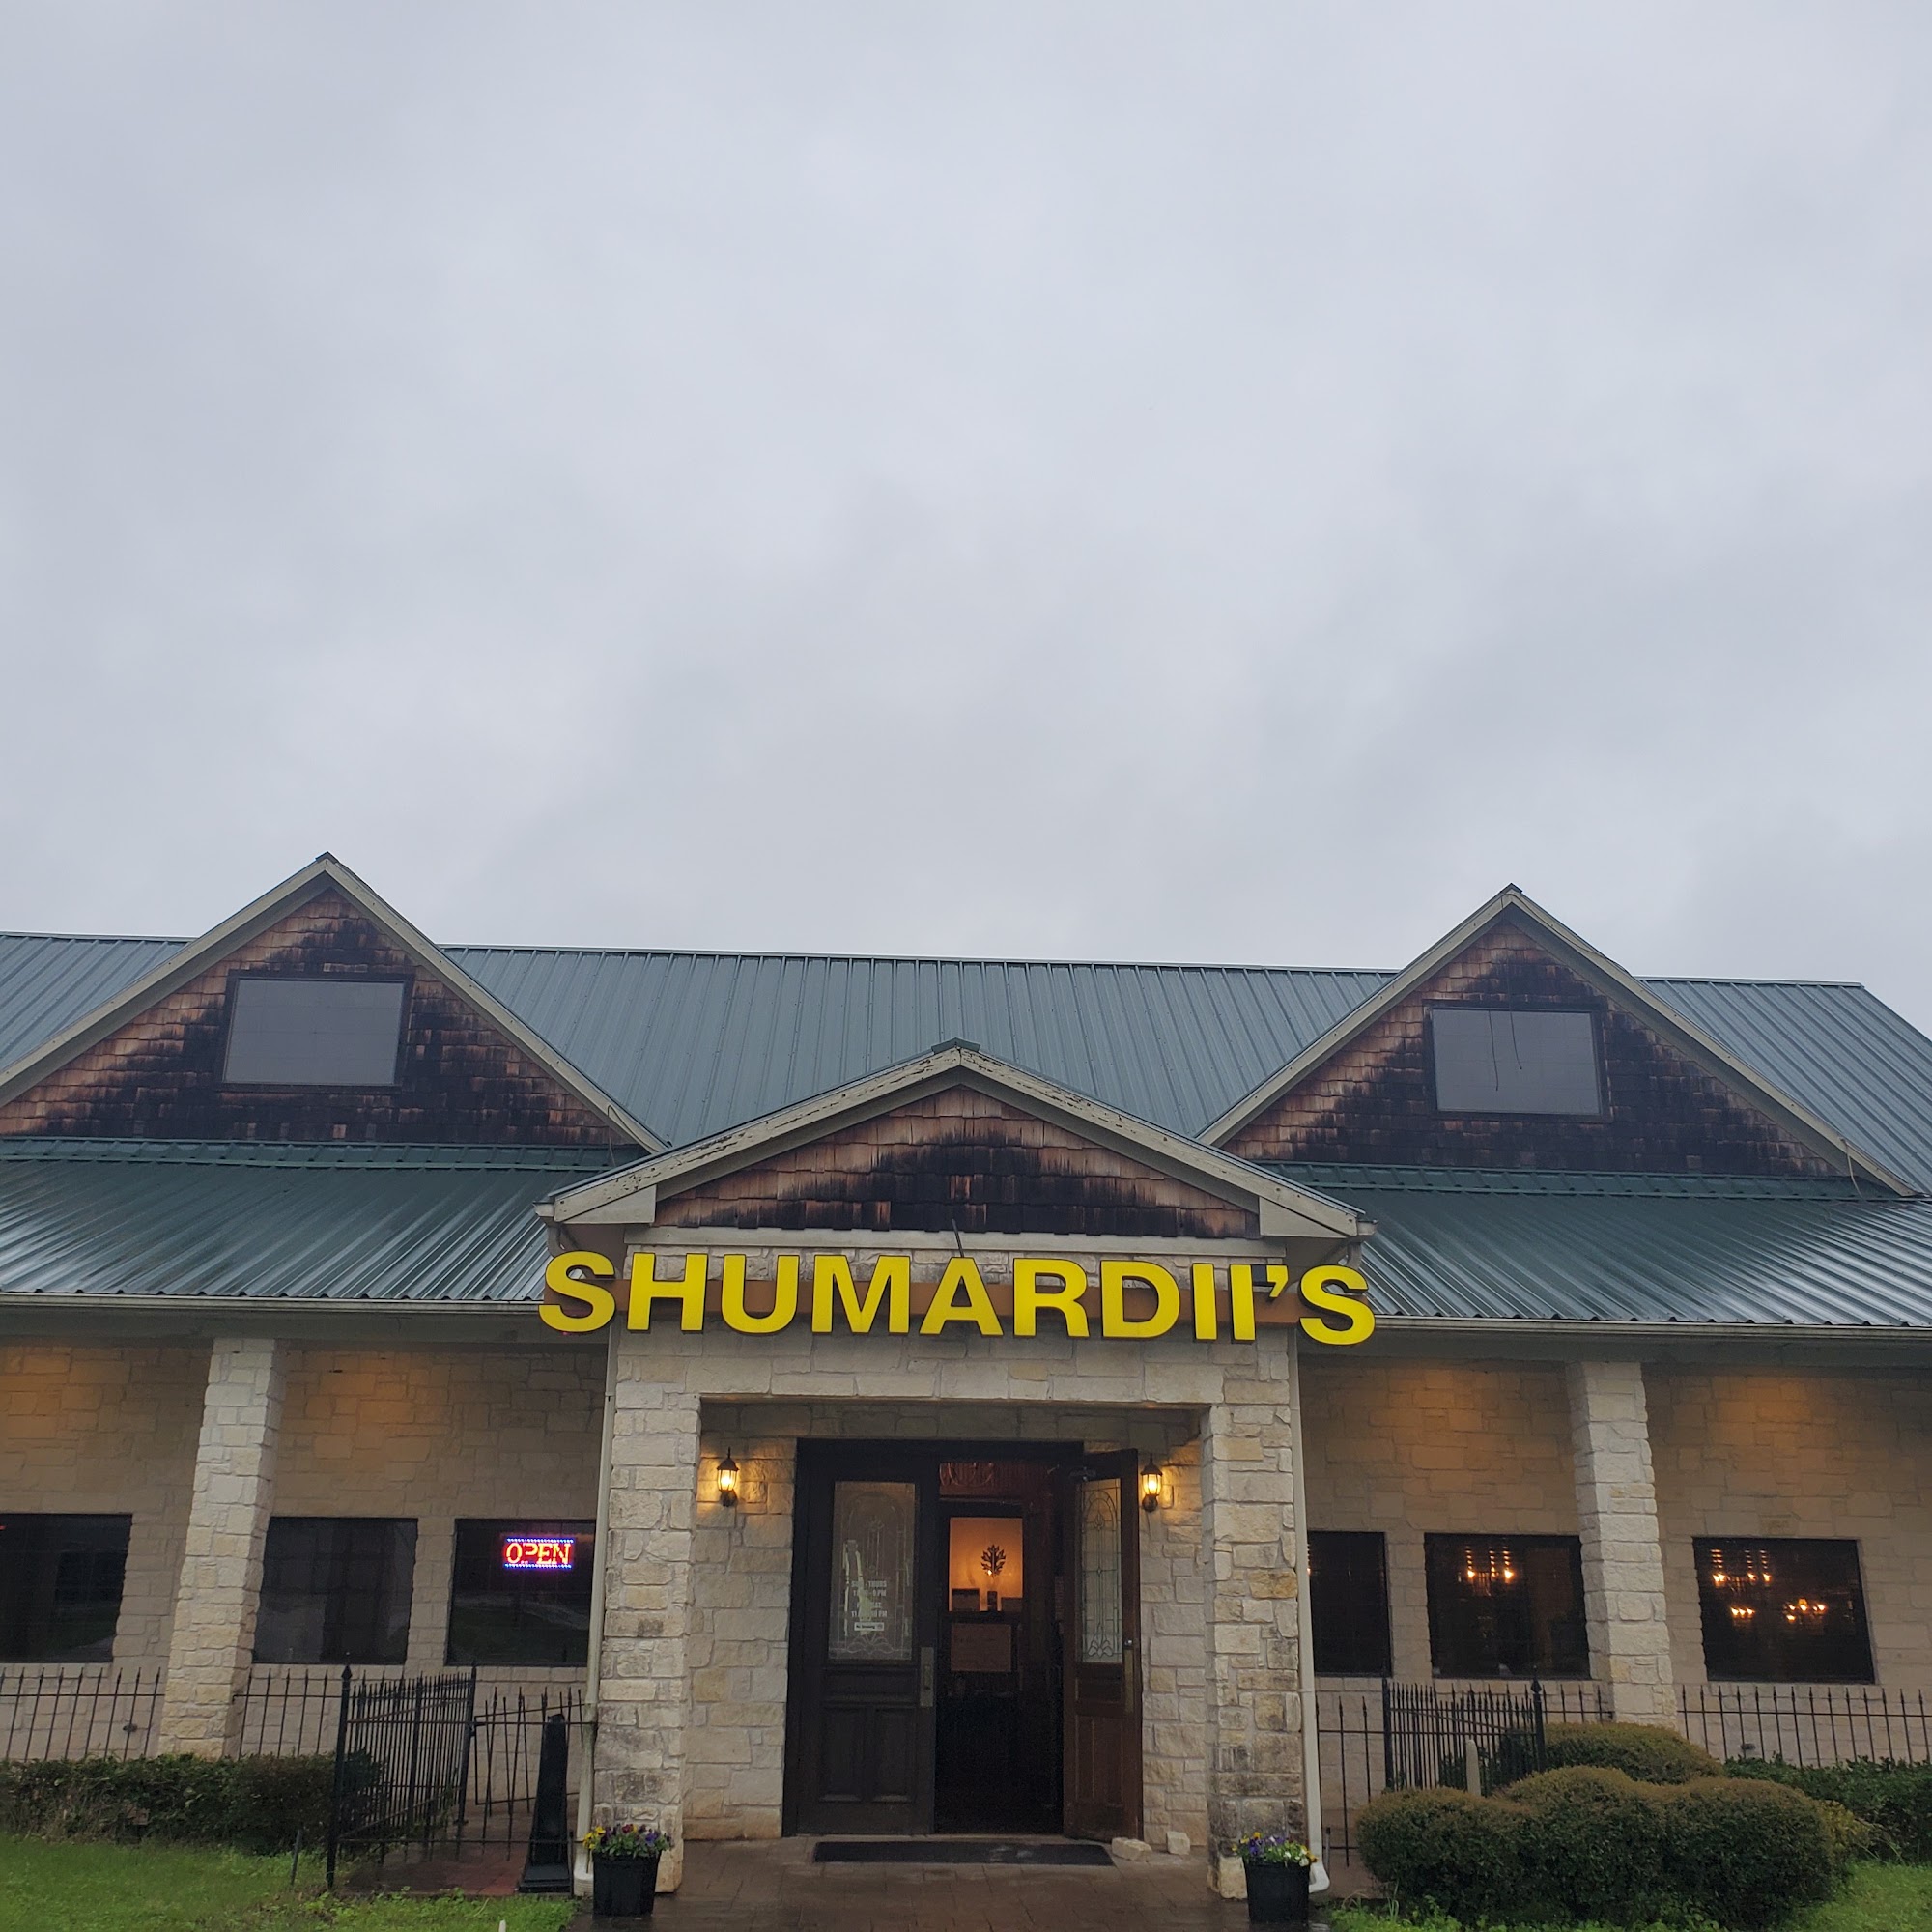 Shumardii's Family Restaurant